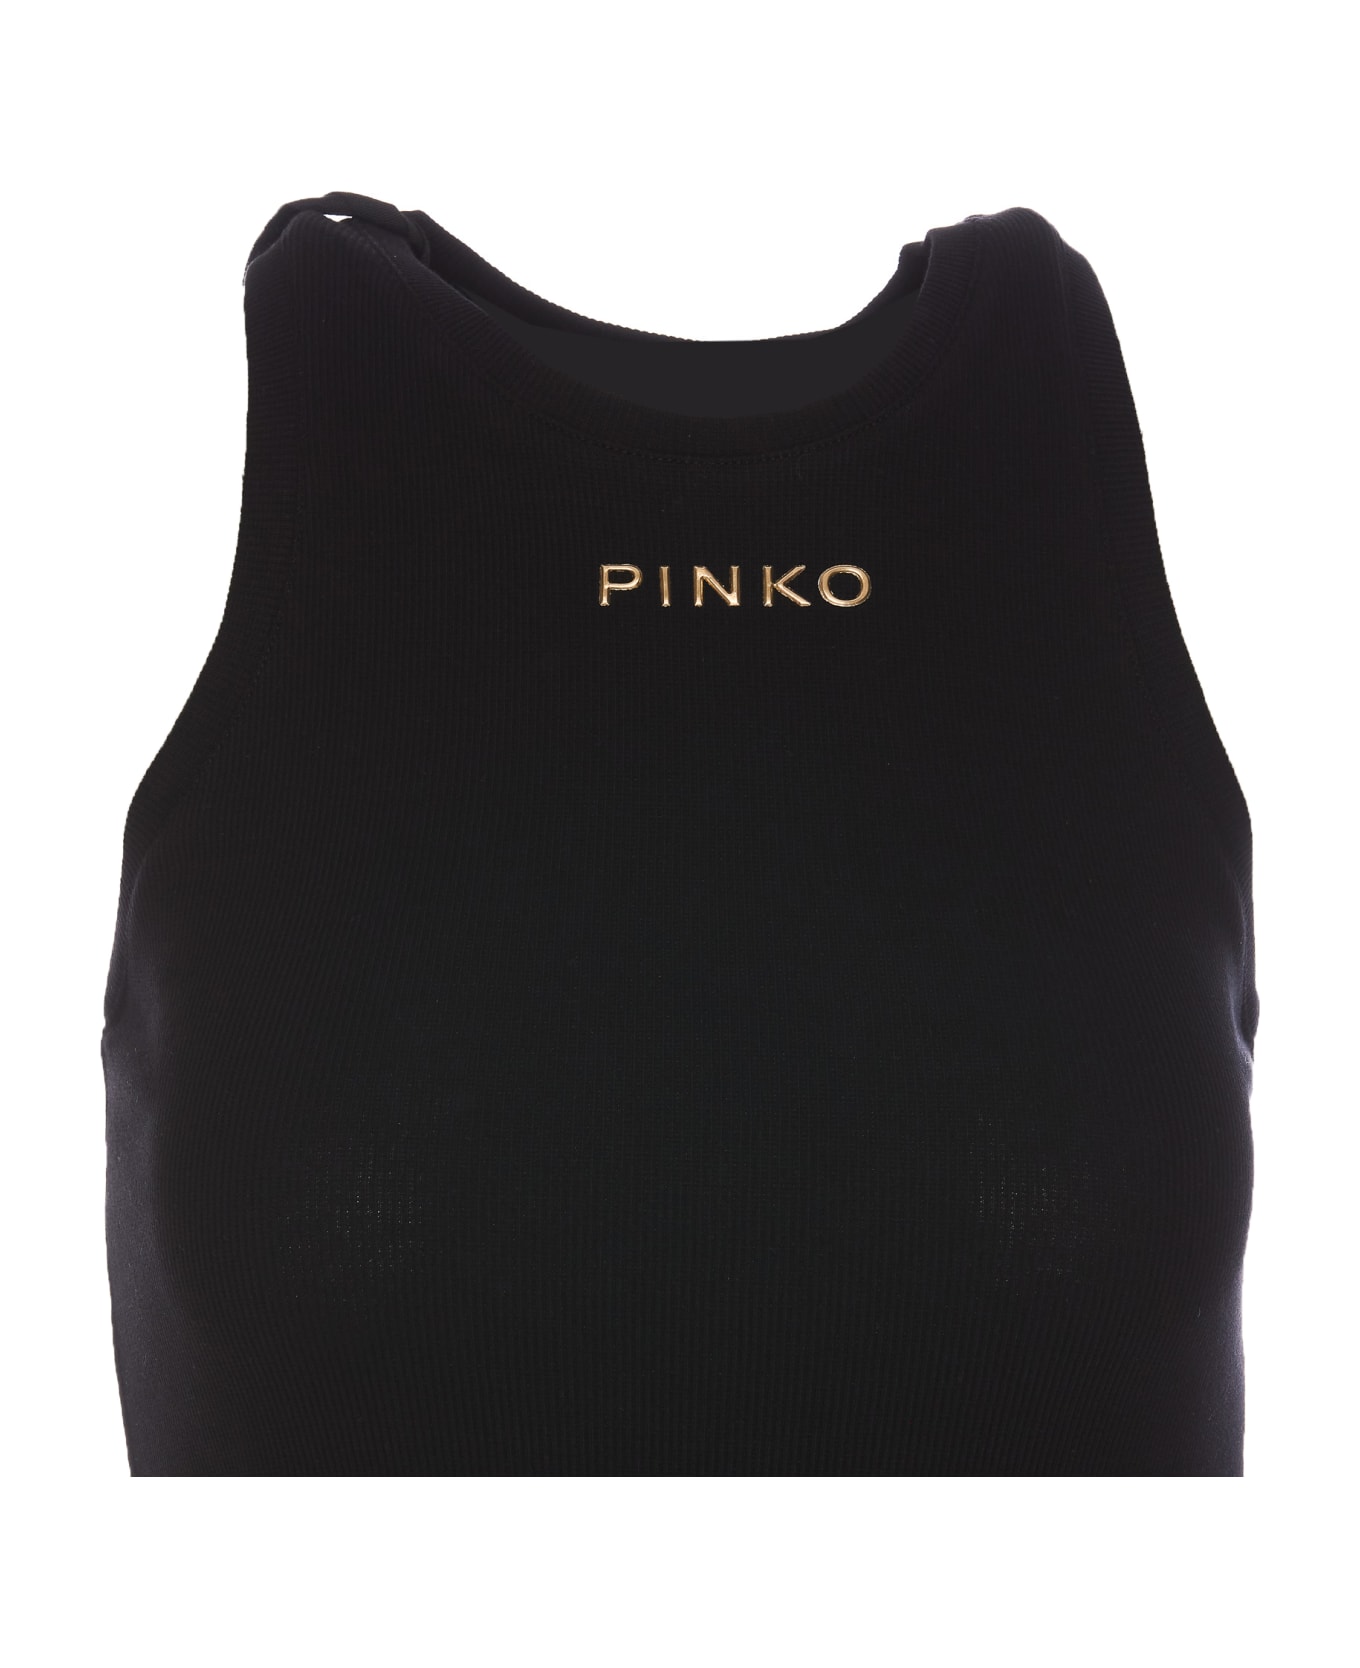 Pinko Distinto Tank Top - Black タンクトップ